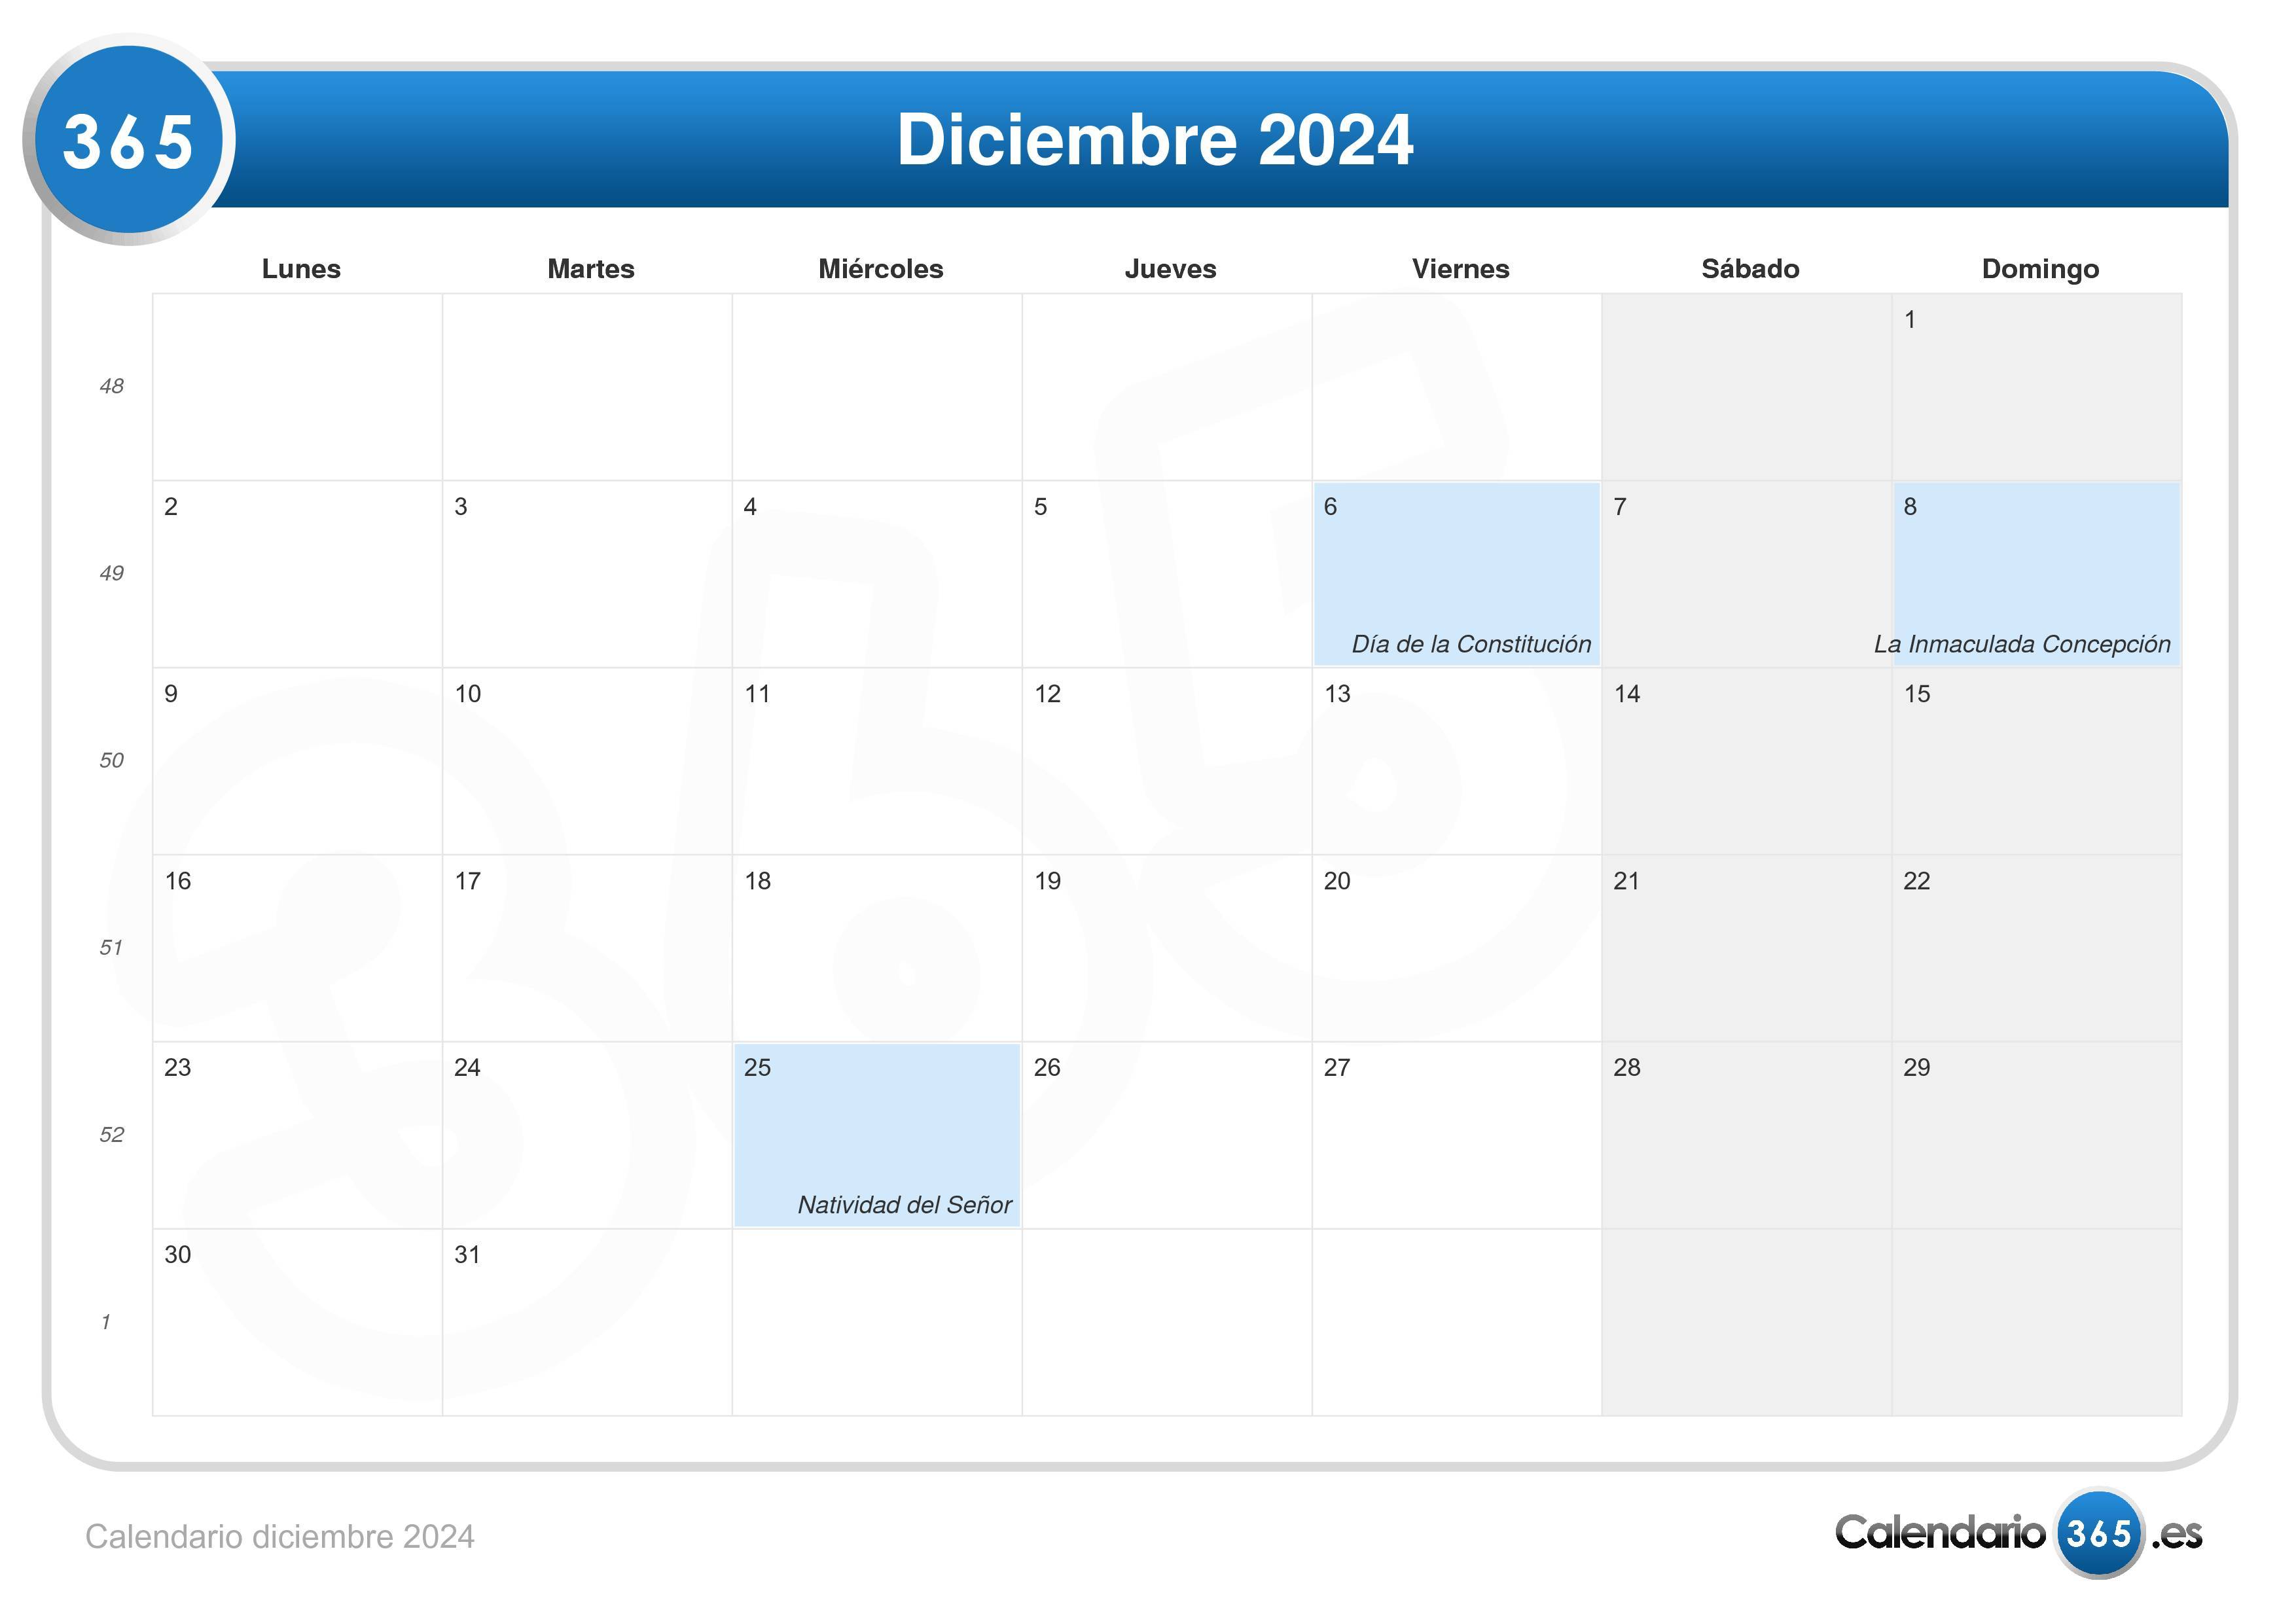 Calendario diciembre 2024